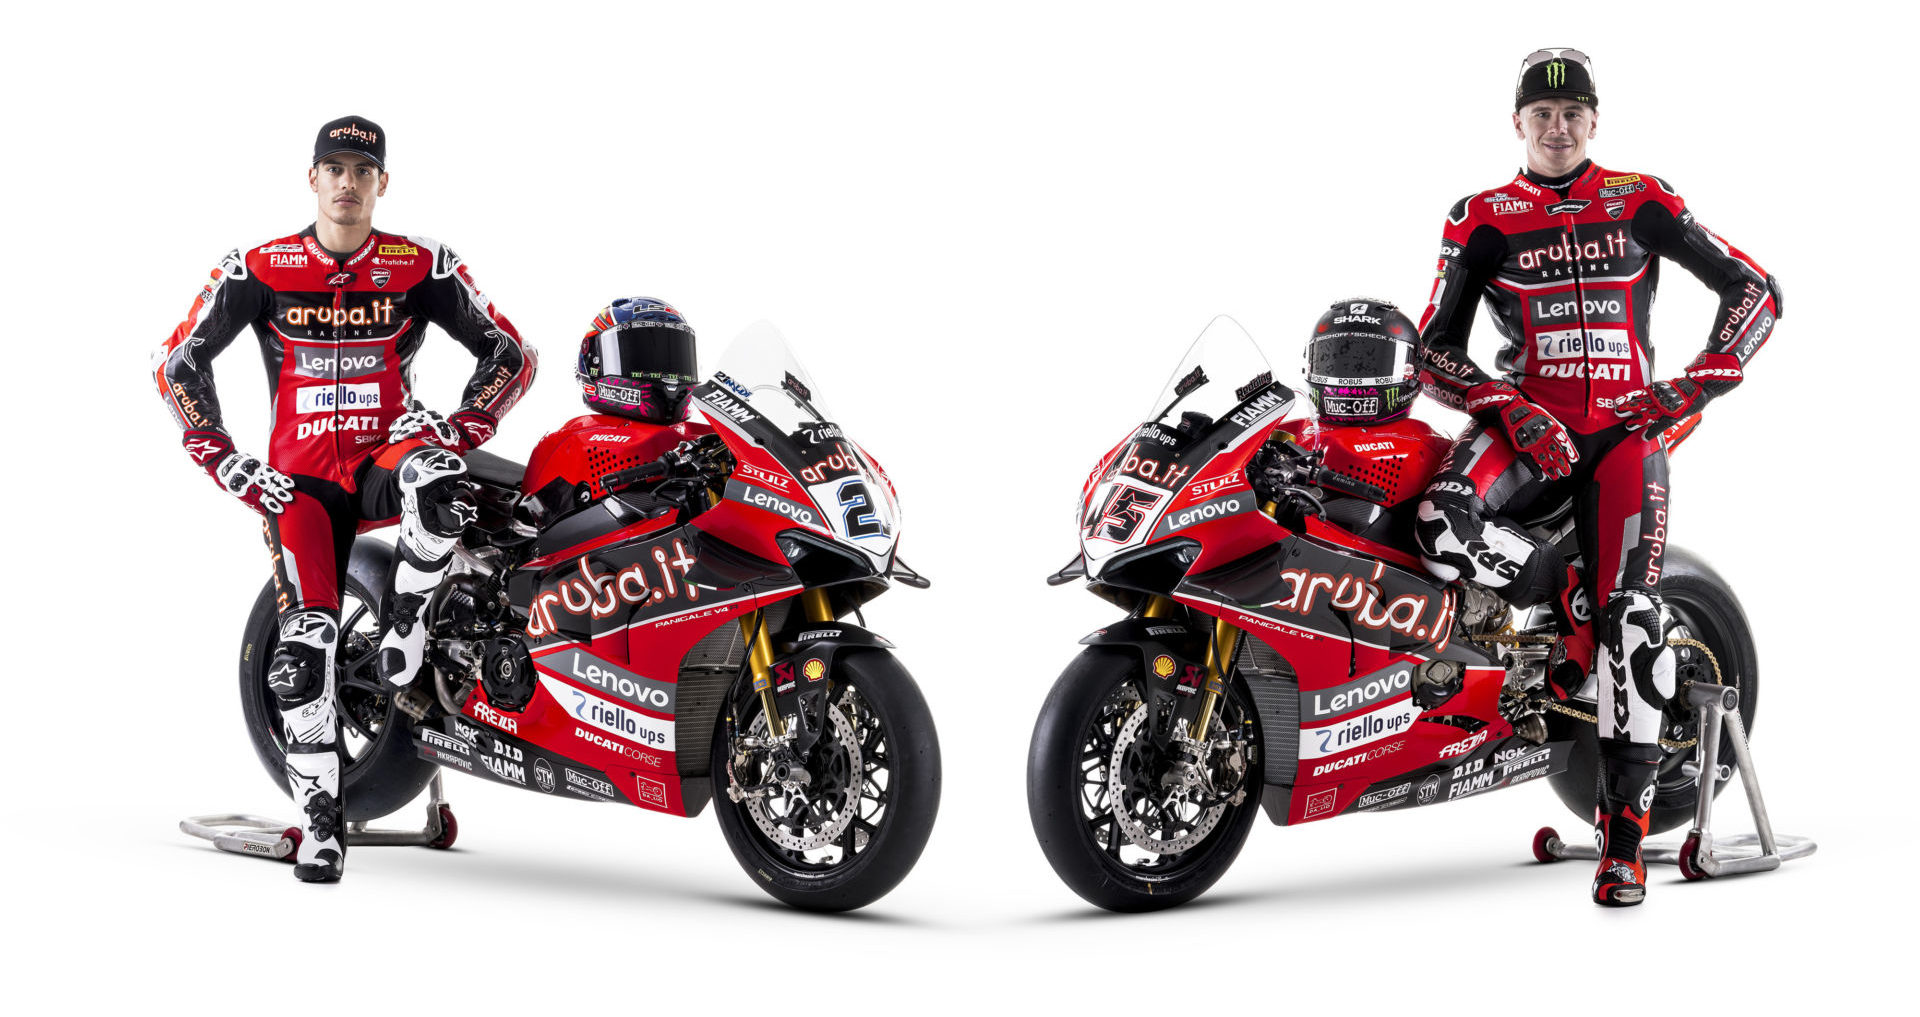 Michael Ruben Rinaldi (left) and Scott Redding (right). Photo courtesy Aruba.it Racing Ducati.